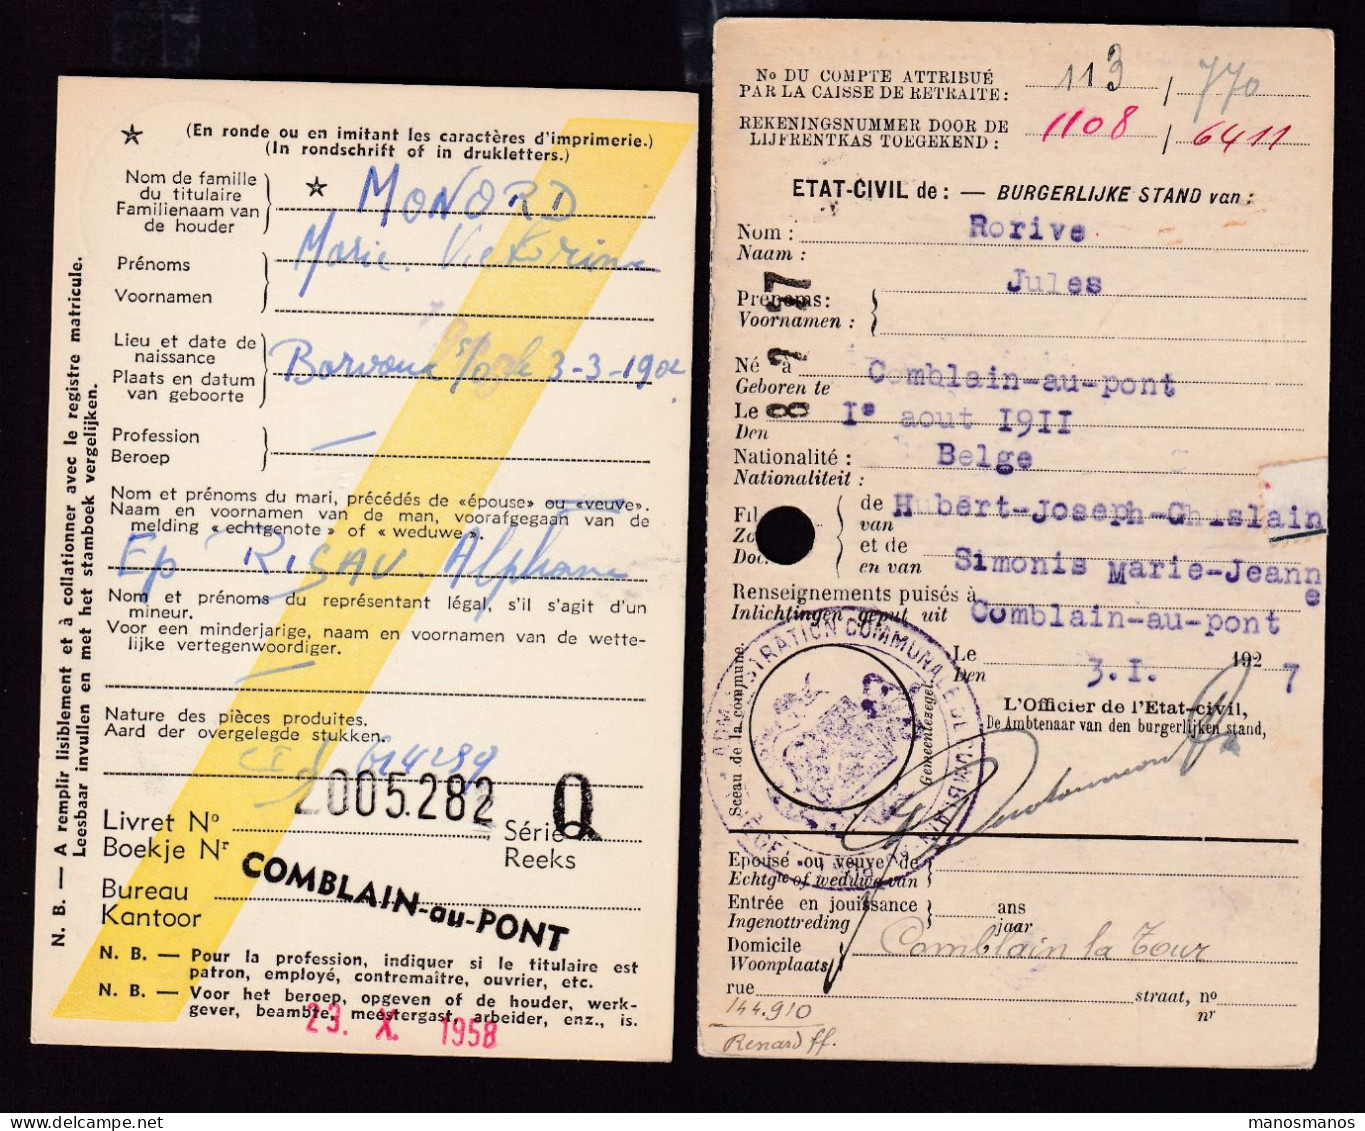 DDFF 560 -- COMBLAIN AU PONT - 2 X Carte De Caisse D'Epargne Postale/Postspaarkaskaart 1927/1958 - 1 X Admin. Communale - Zonder Portkosten